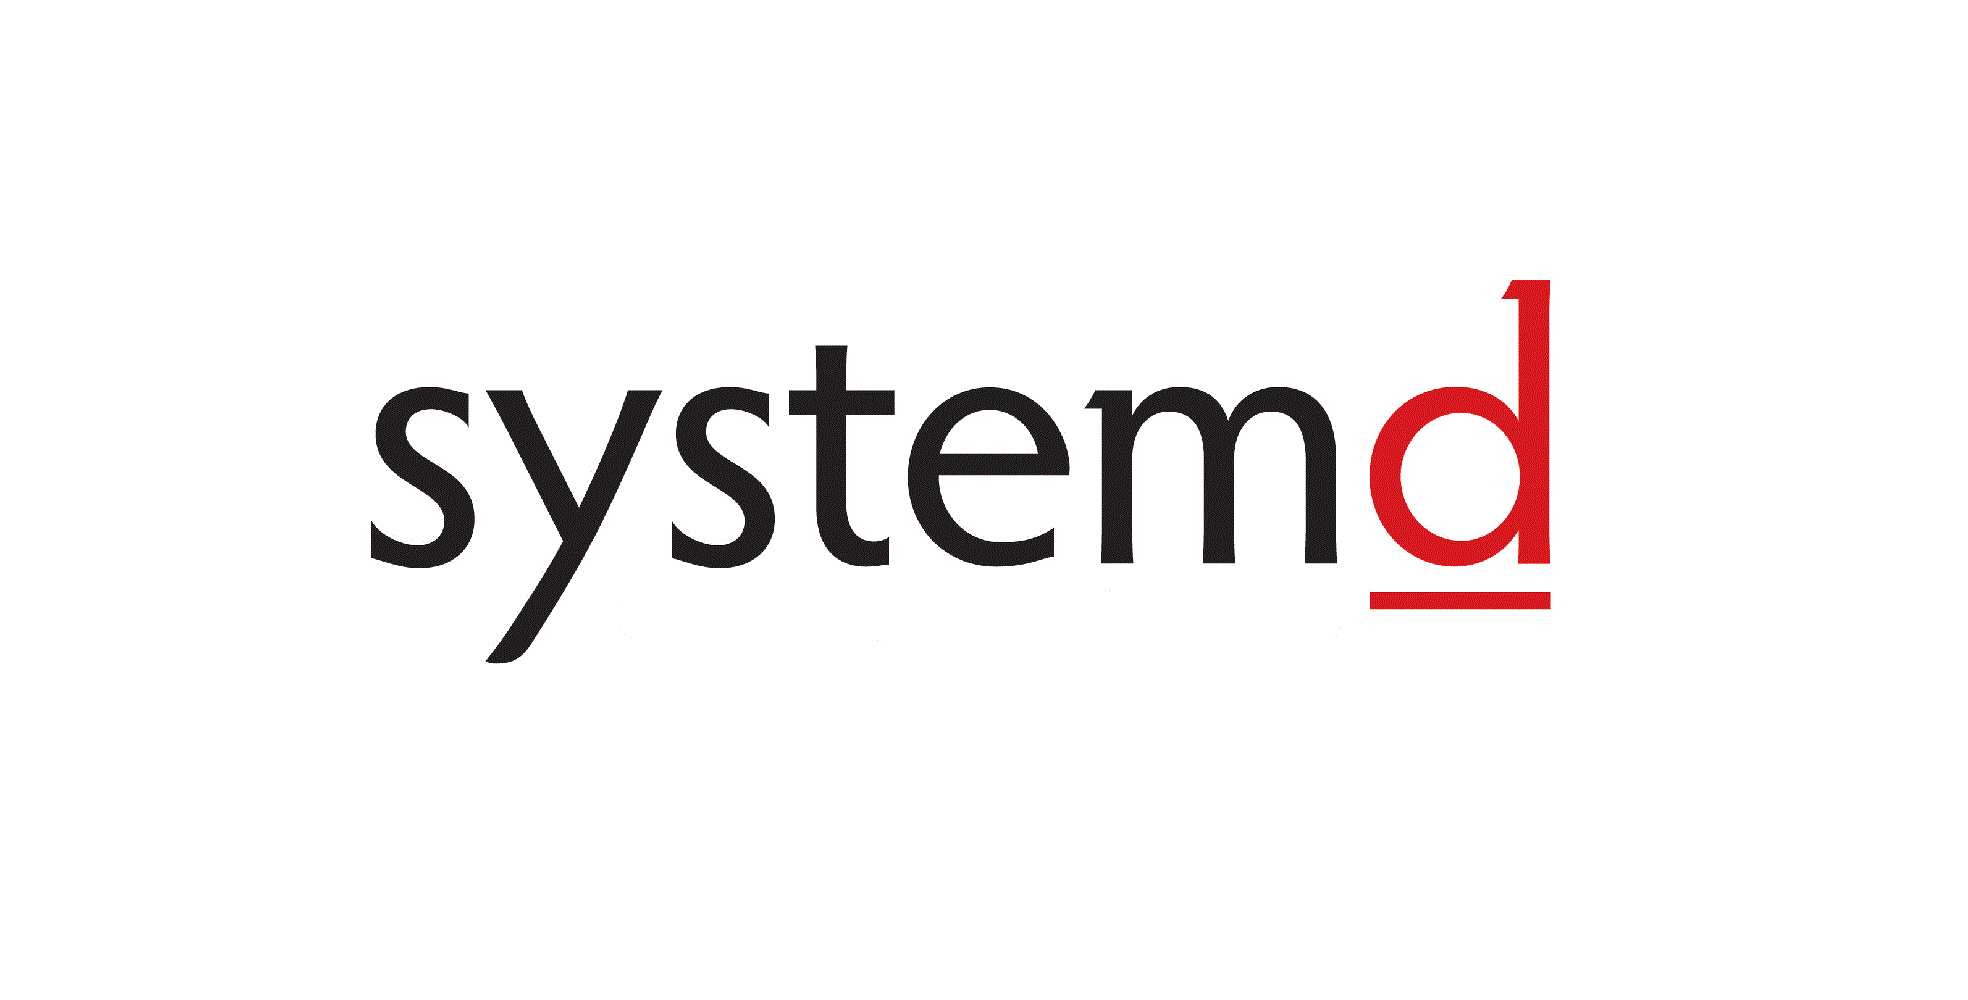 Systemd - различие между systemctl и сервисными командами